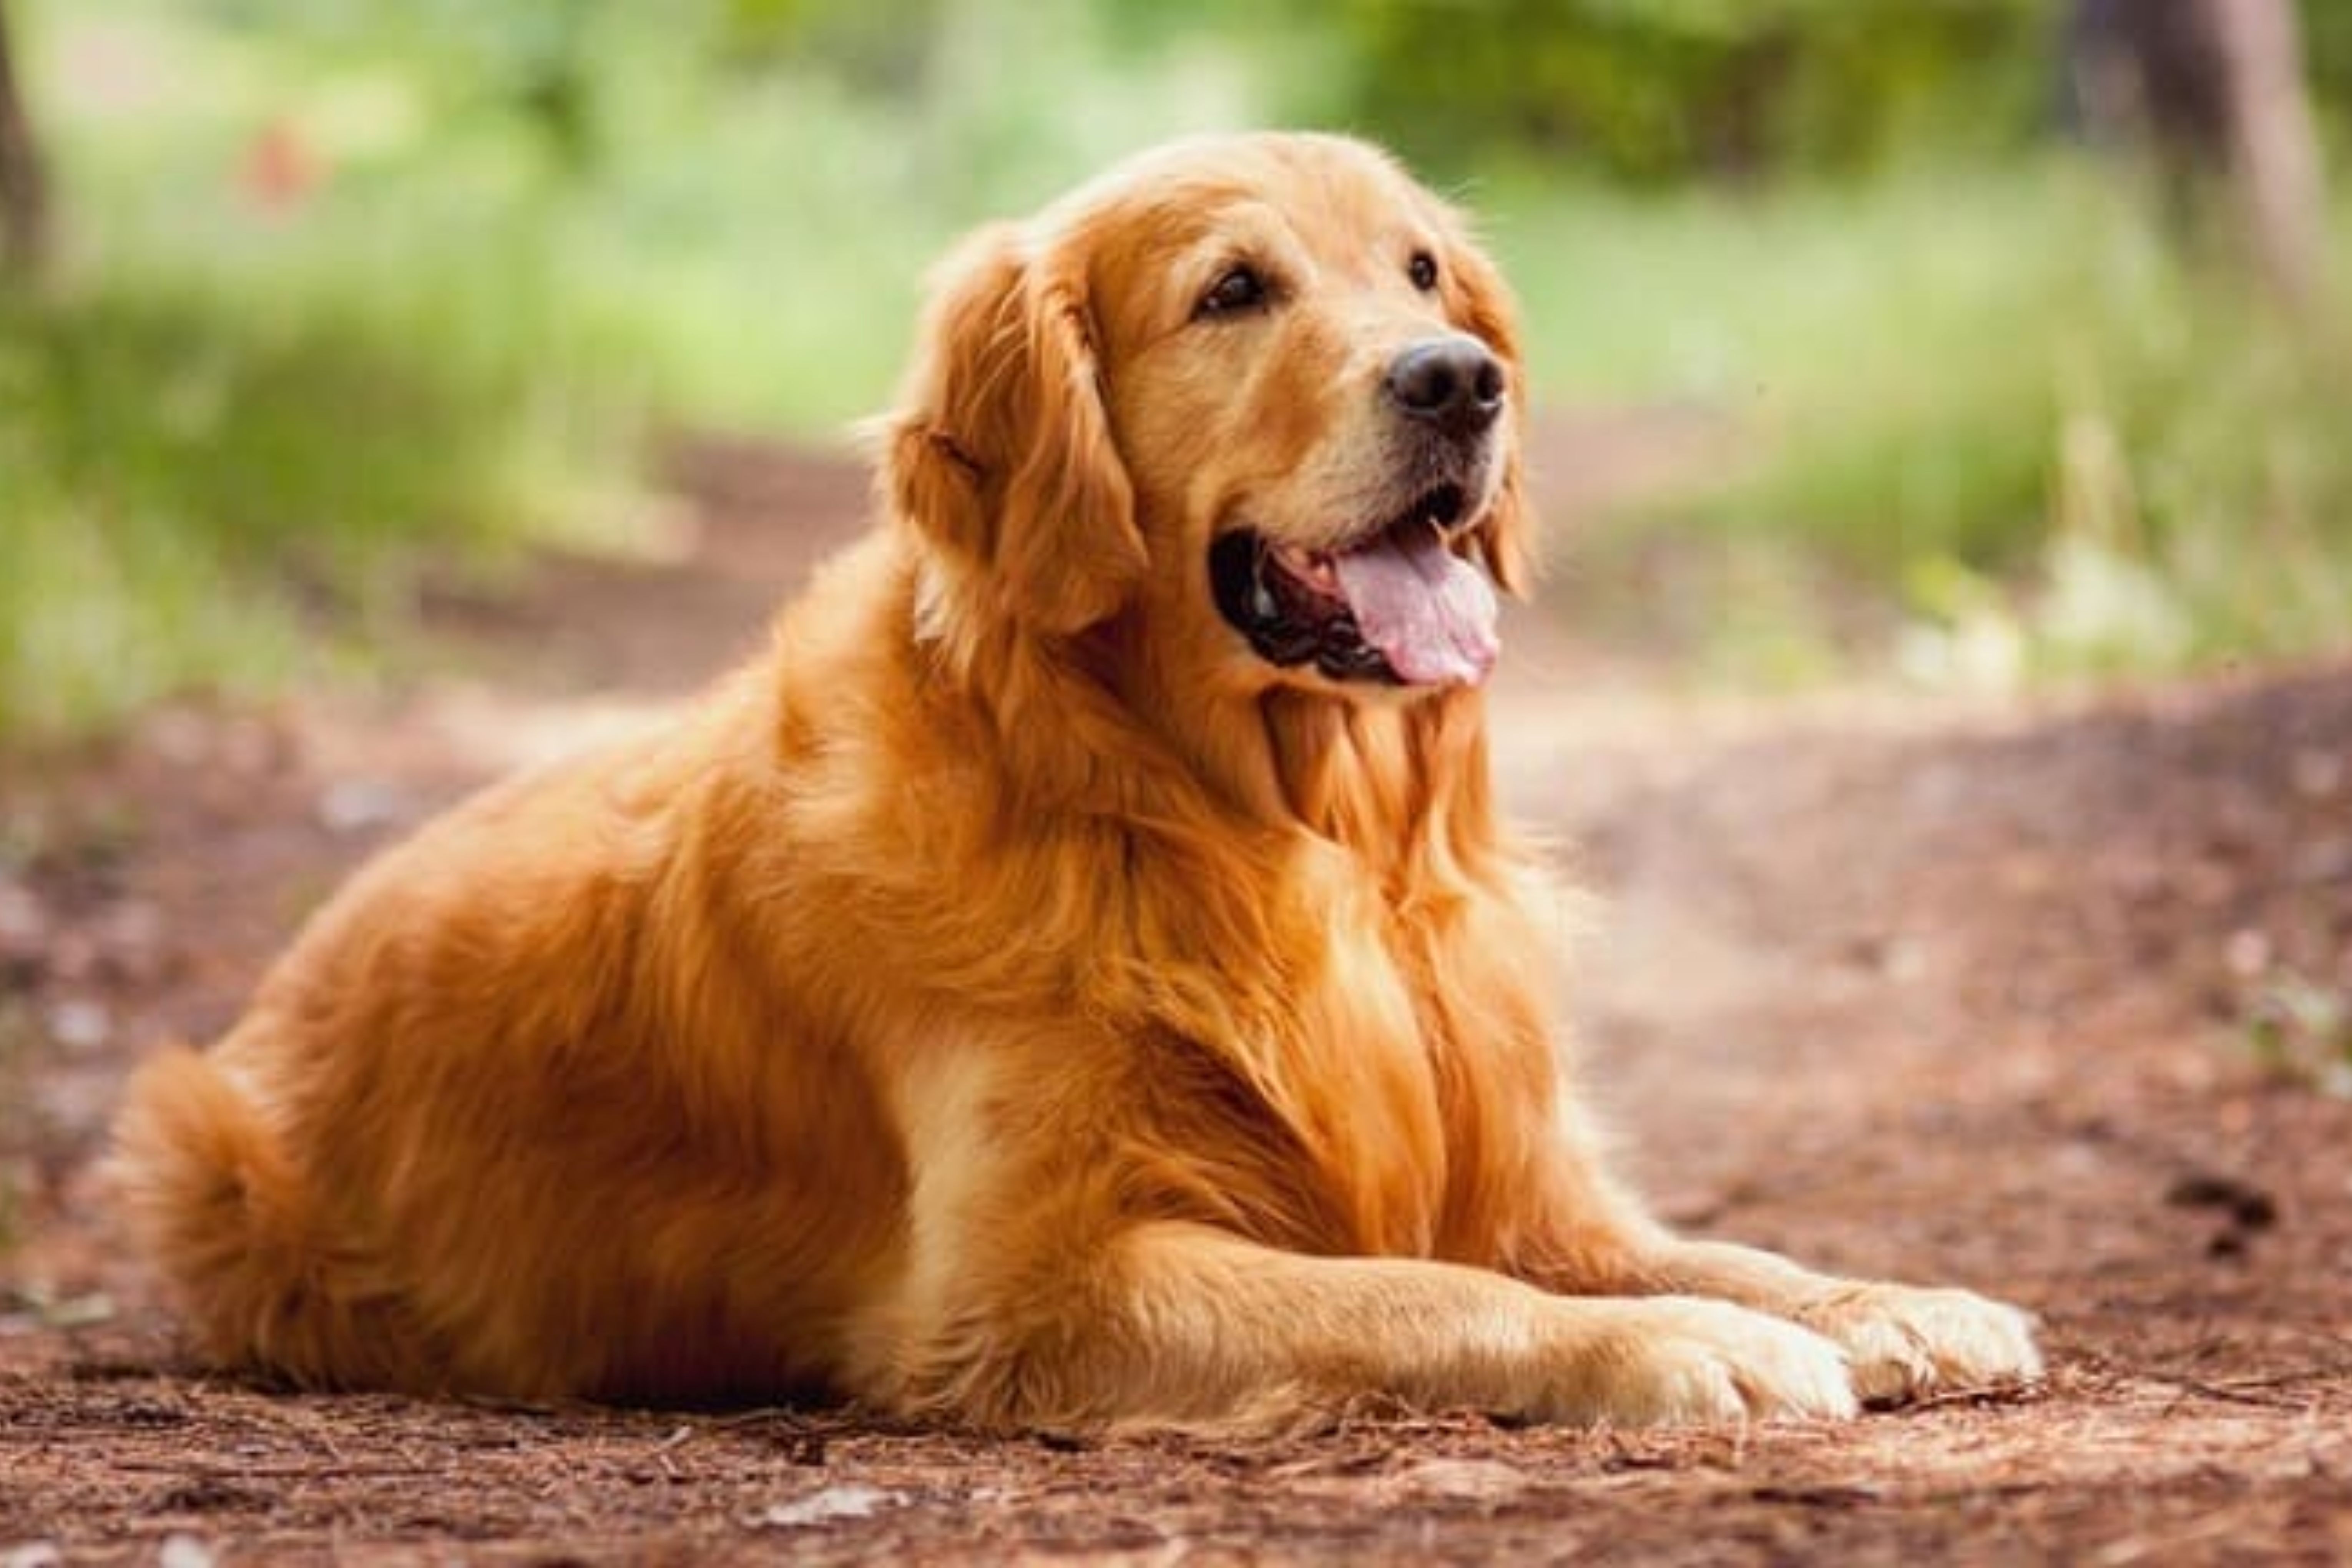 2º - Golden Retriever: muito semelhante ao Labrador, os Goldens são muito escolhidos como cães-guia por seu temperamento tranquilo, disposição para aventura e lealdade. (Reprodução)